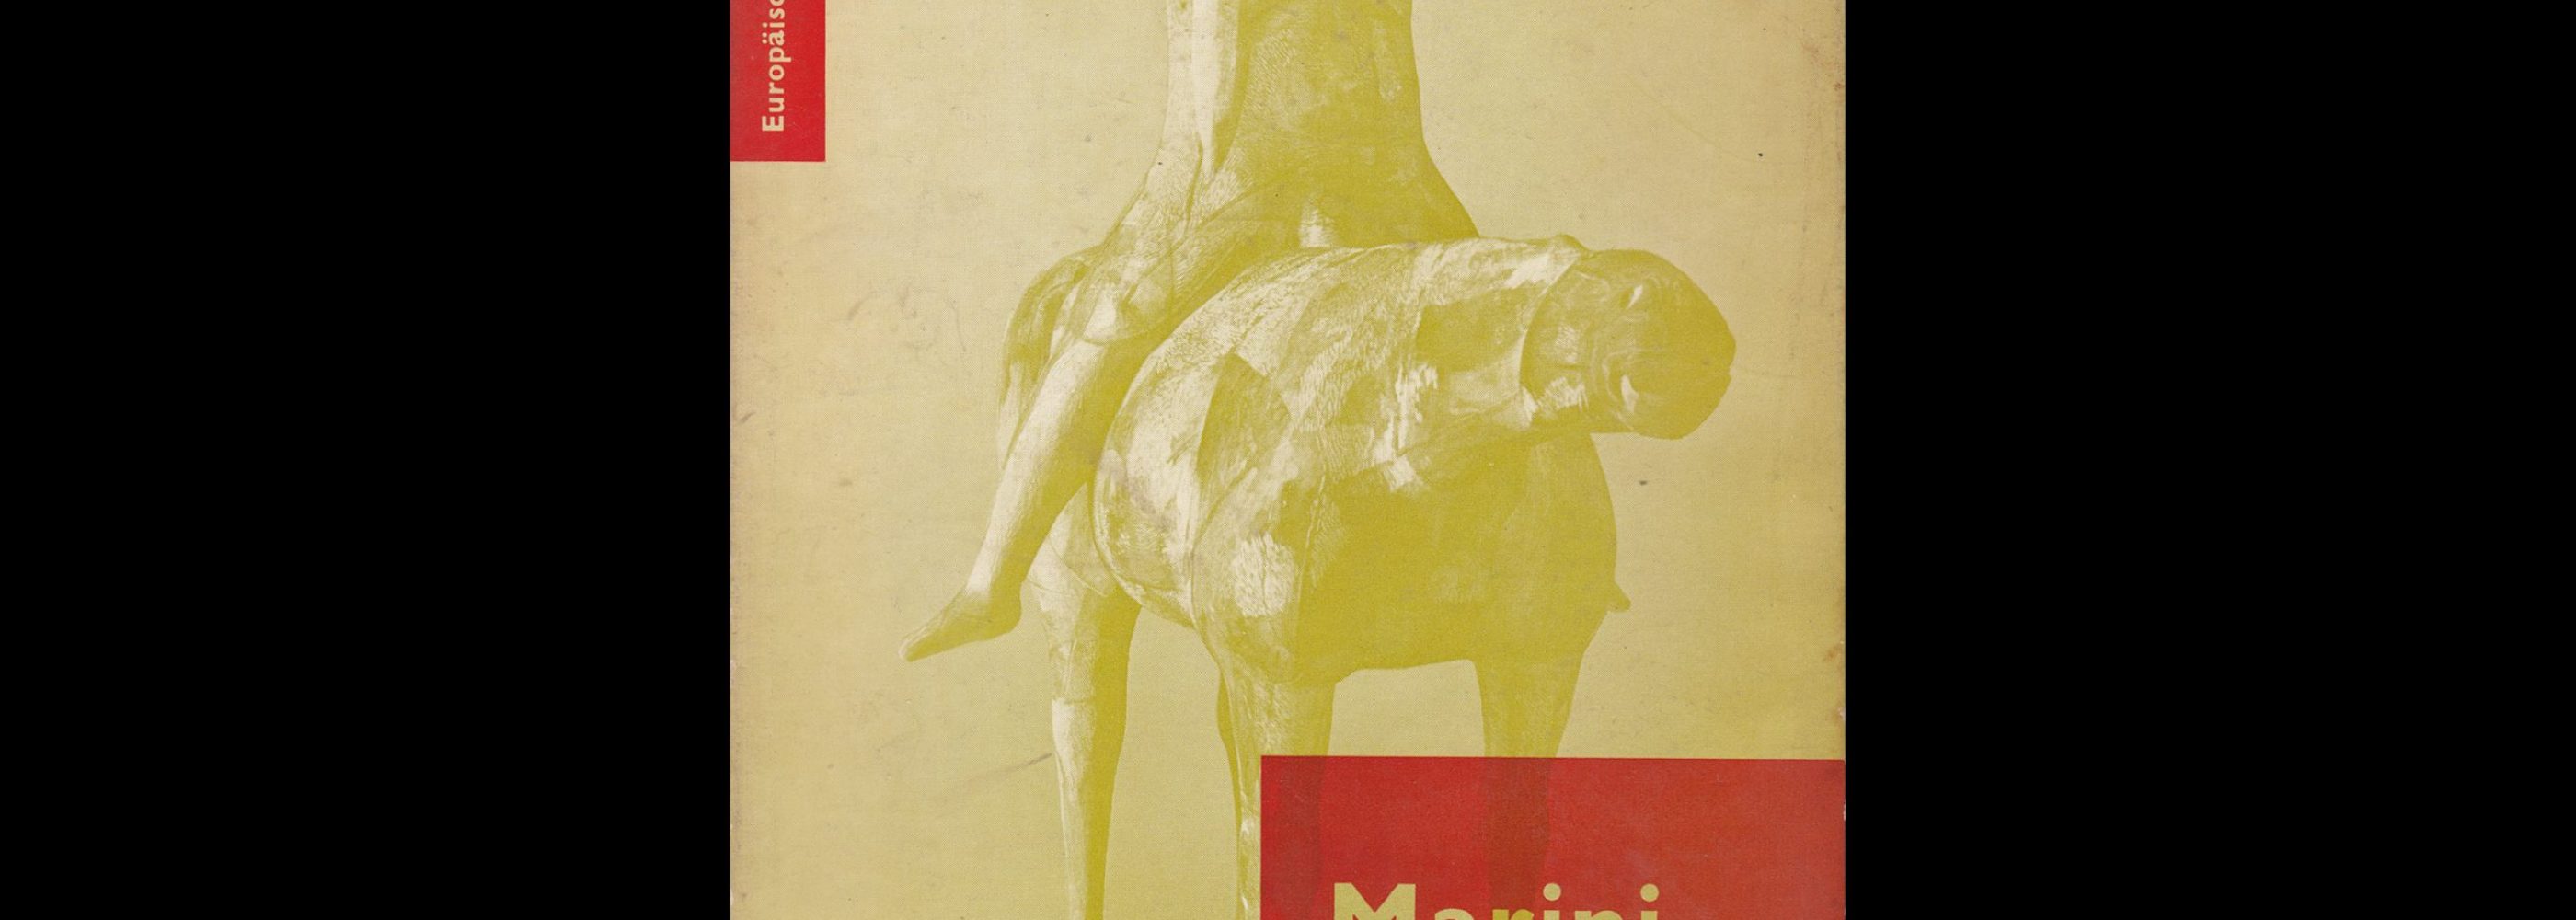 Marino Marini - Europäische Bildhauer, 1954. Designed by Otto Treumann